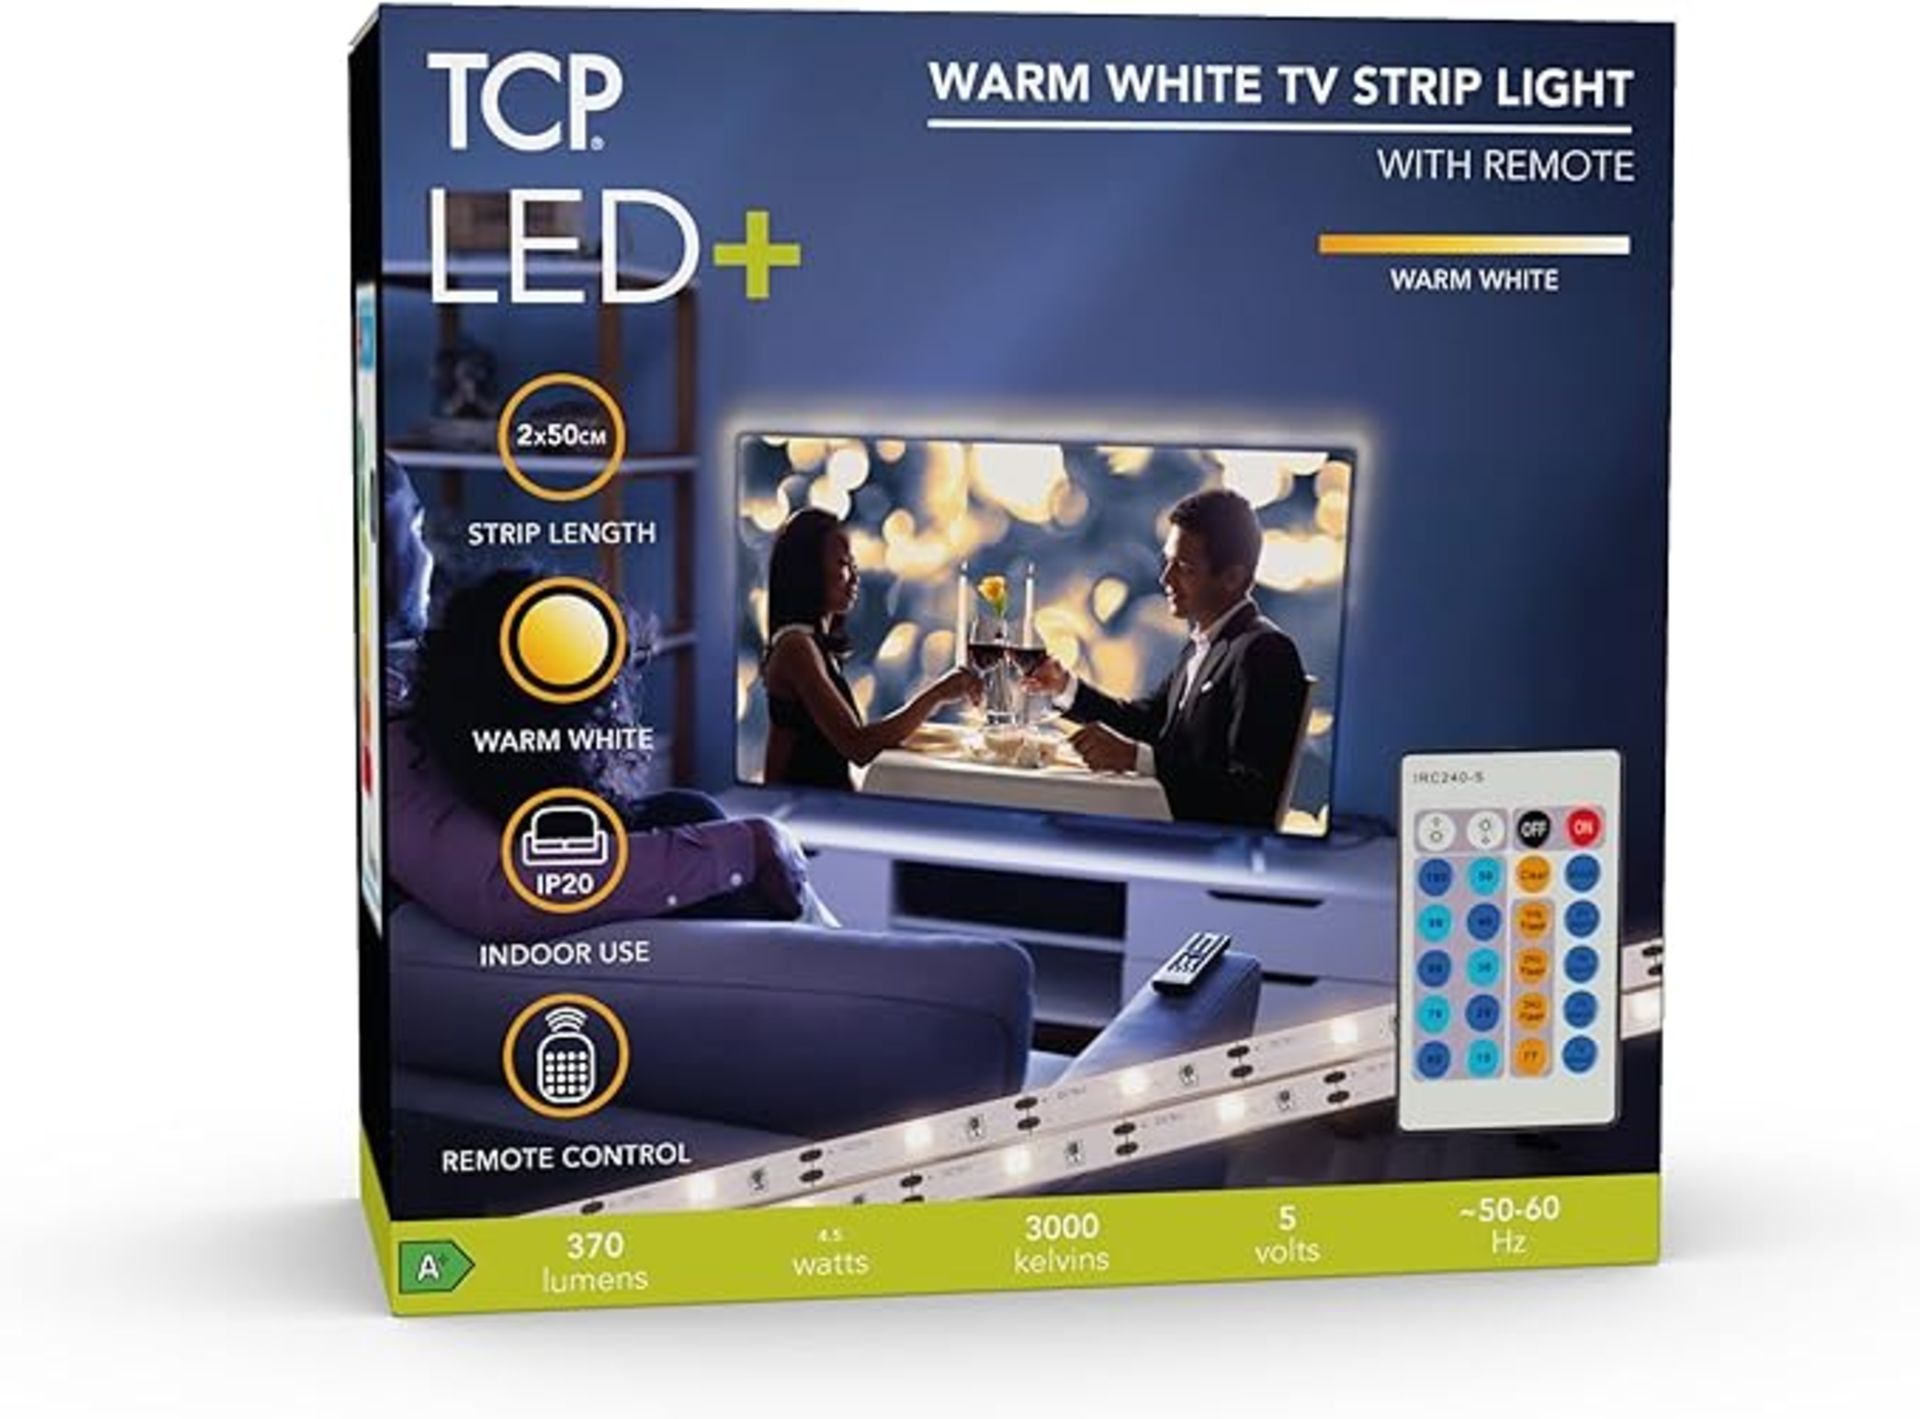 TRADE LOT 200 X TCP LED Plus Remote Strip Light TV 3000 Kelvin USB, Warm White RRP £11.99 Each (